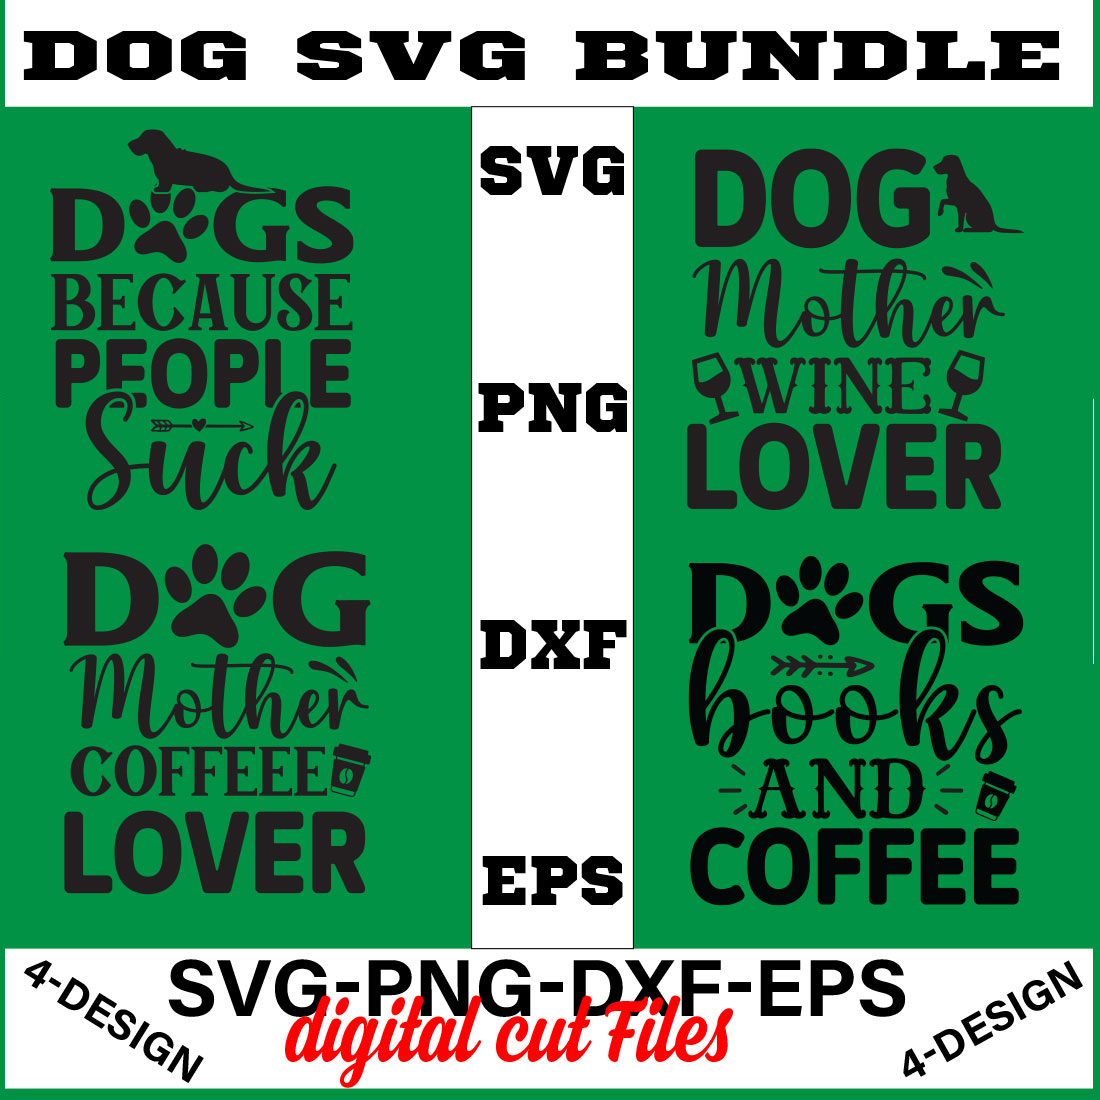 Dog Bundle SVG, Dog Mom Svg, Dog Lover Svg, Cricut Svg, Dog Quote, Funny Svg, Pet Mom Svg, Cut Files Volume-10 cover image.